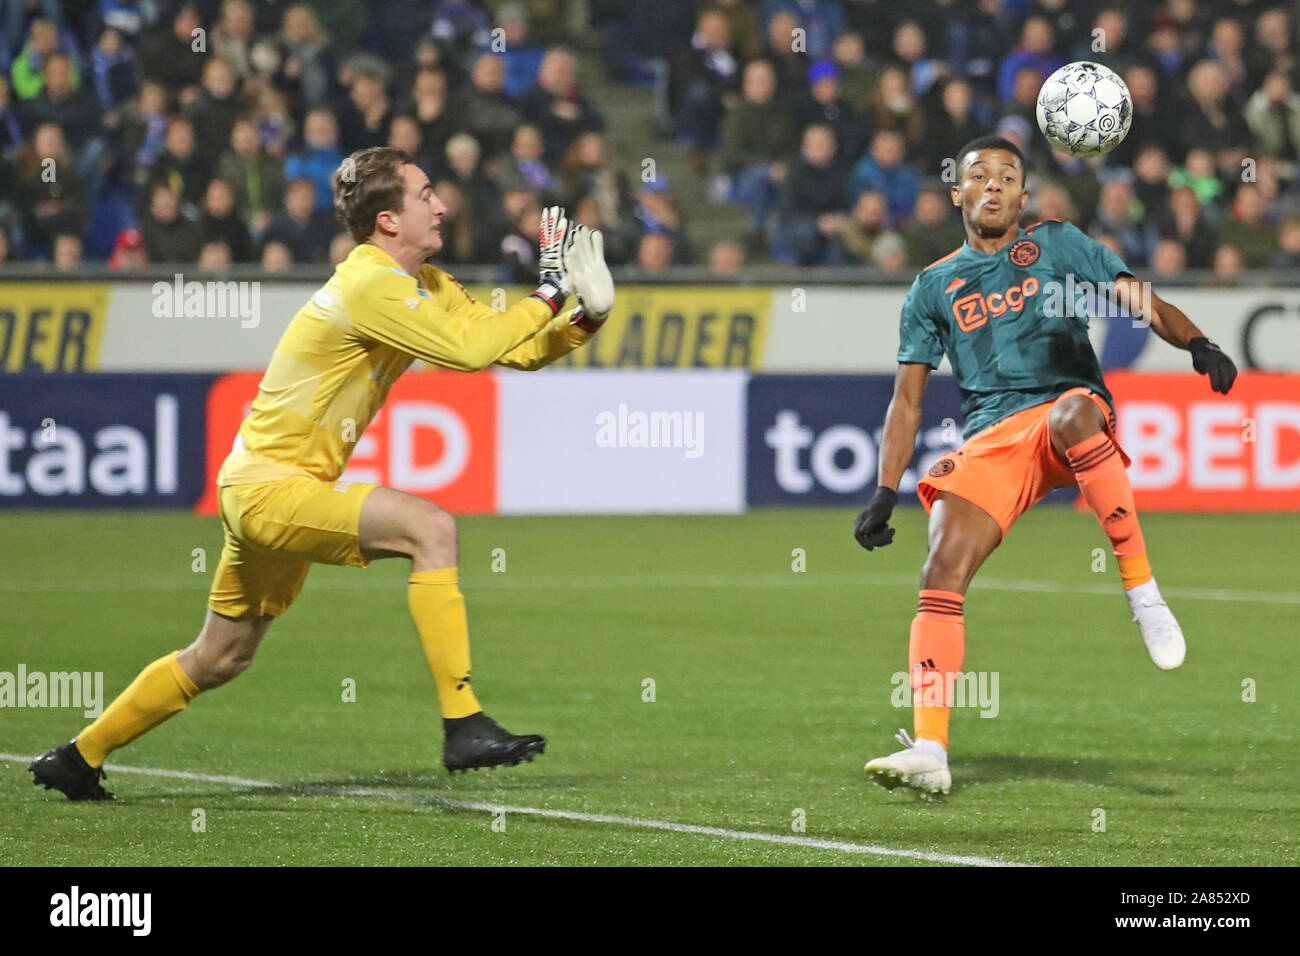 1 novembre 2019 Zwolle, pays-Bas Soccer Néerlandais Eredivisiie PEC Zwolle contre Ajax L-r: Xavier MOU (gardien) de Pec Zwolle, David NERE de Ajax onderweg na de 0-3 Banque D'Images